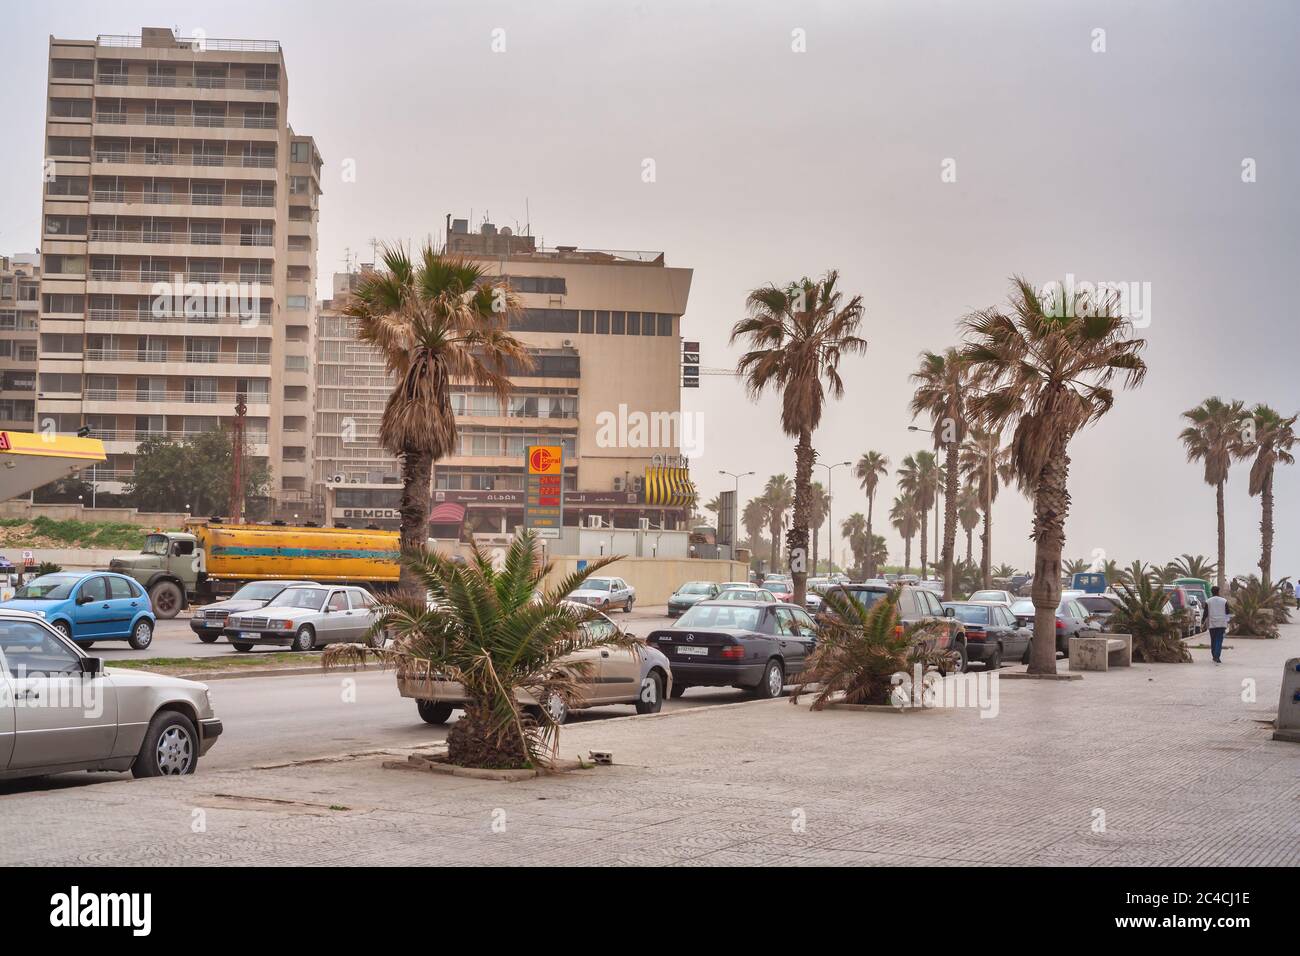 Corniche, l'architecture de la ville, Beyrouth, Liban Banque D'Images